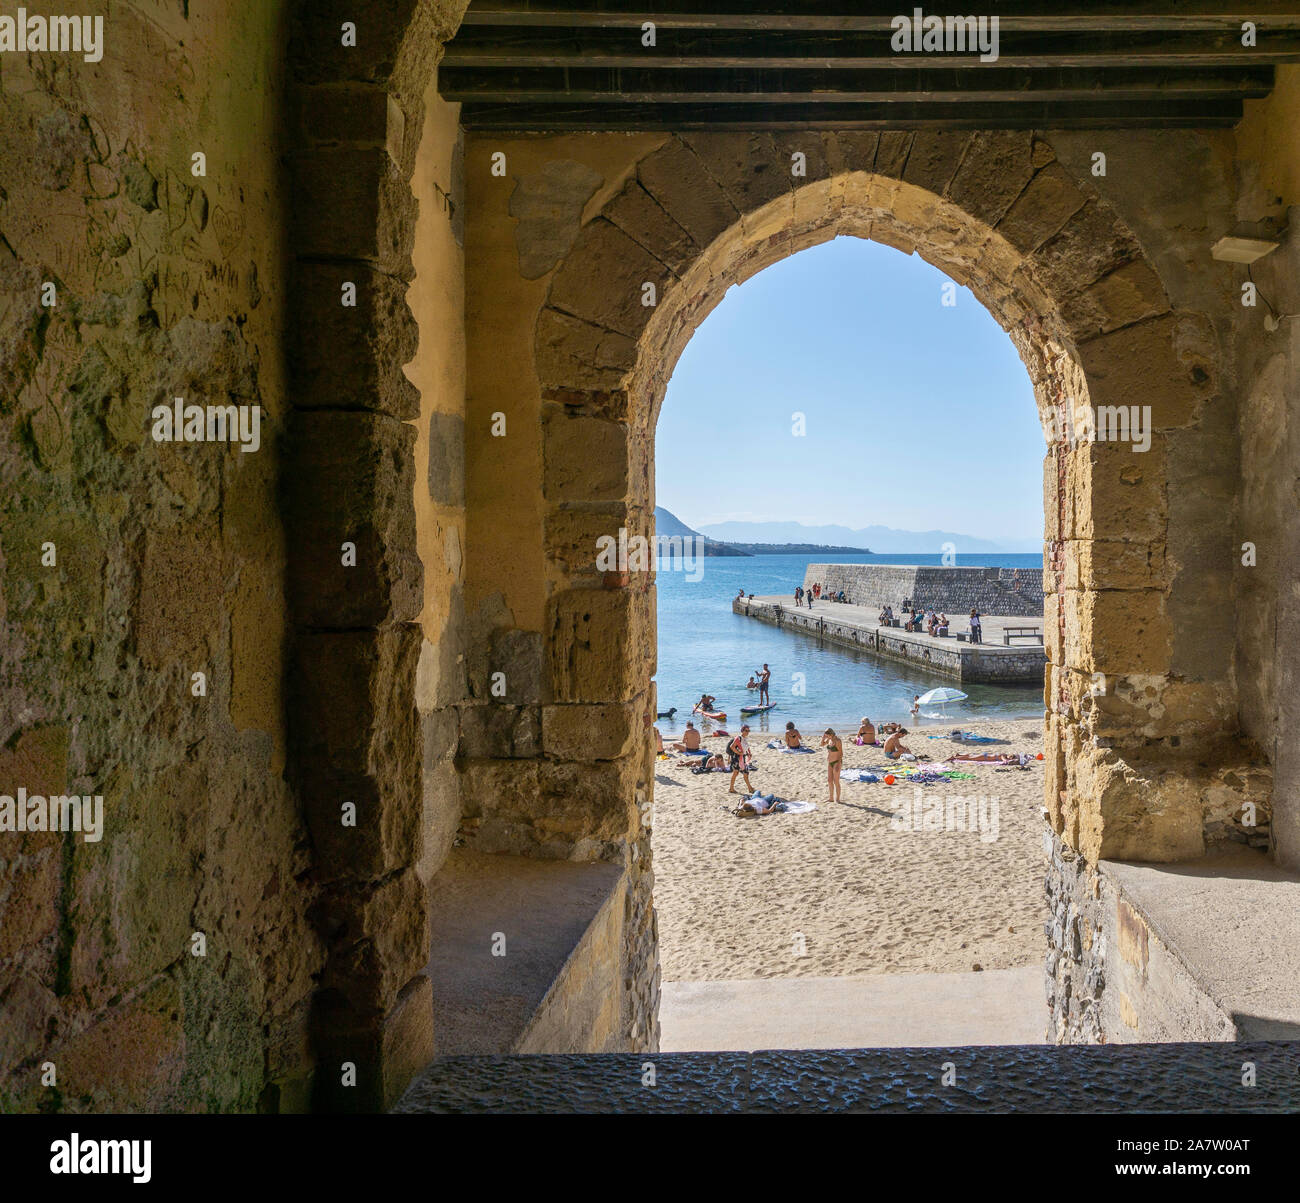 La plage et la jetée de Cefalú, Sicile, Italie, vu par une arcades. Banque D'Images